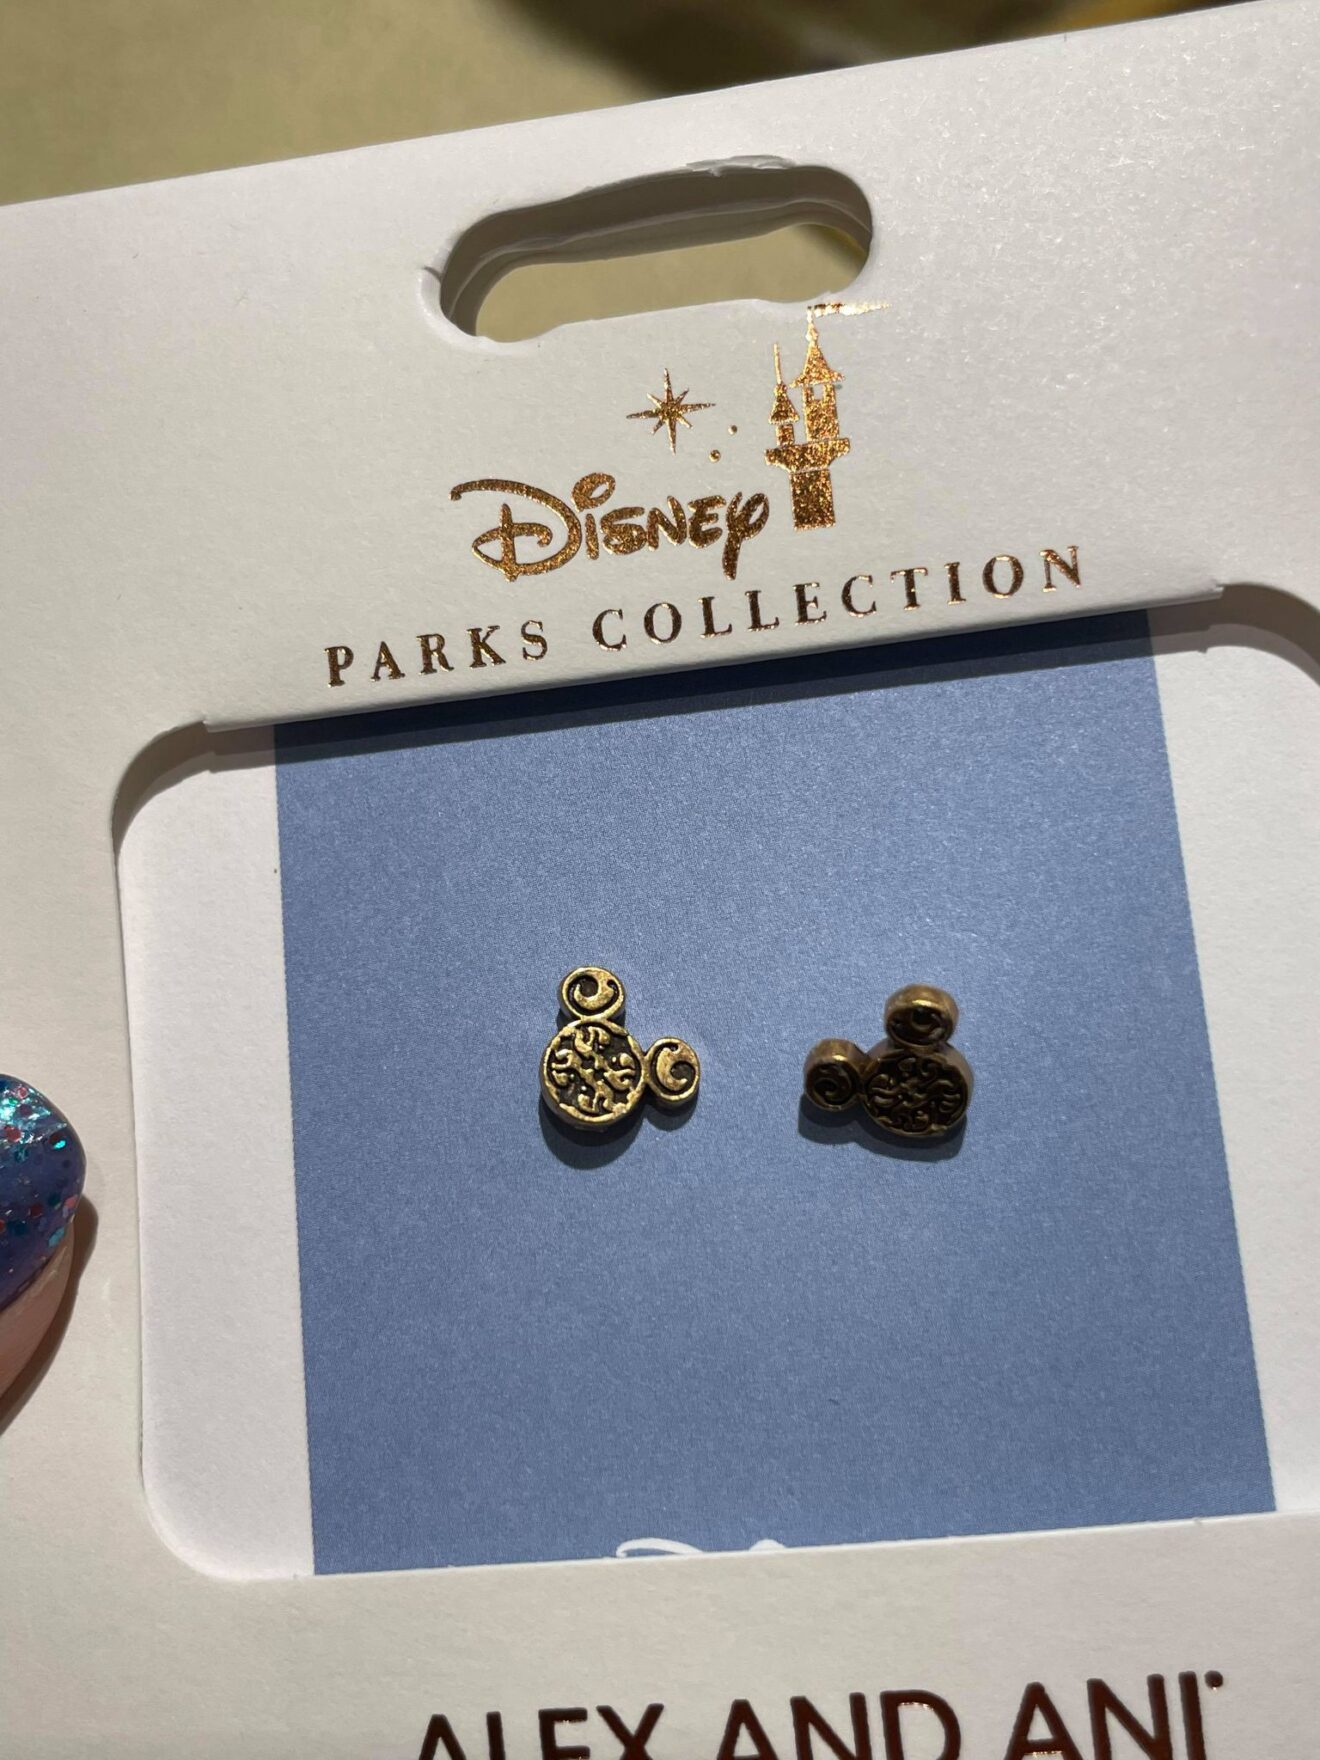 New Disney Alex and Ani Jewelry Arrives at Walt Disney World! - Jewelry